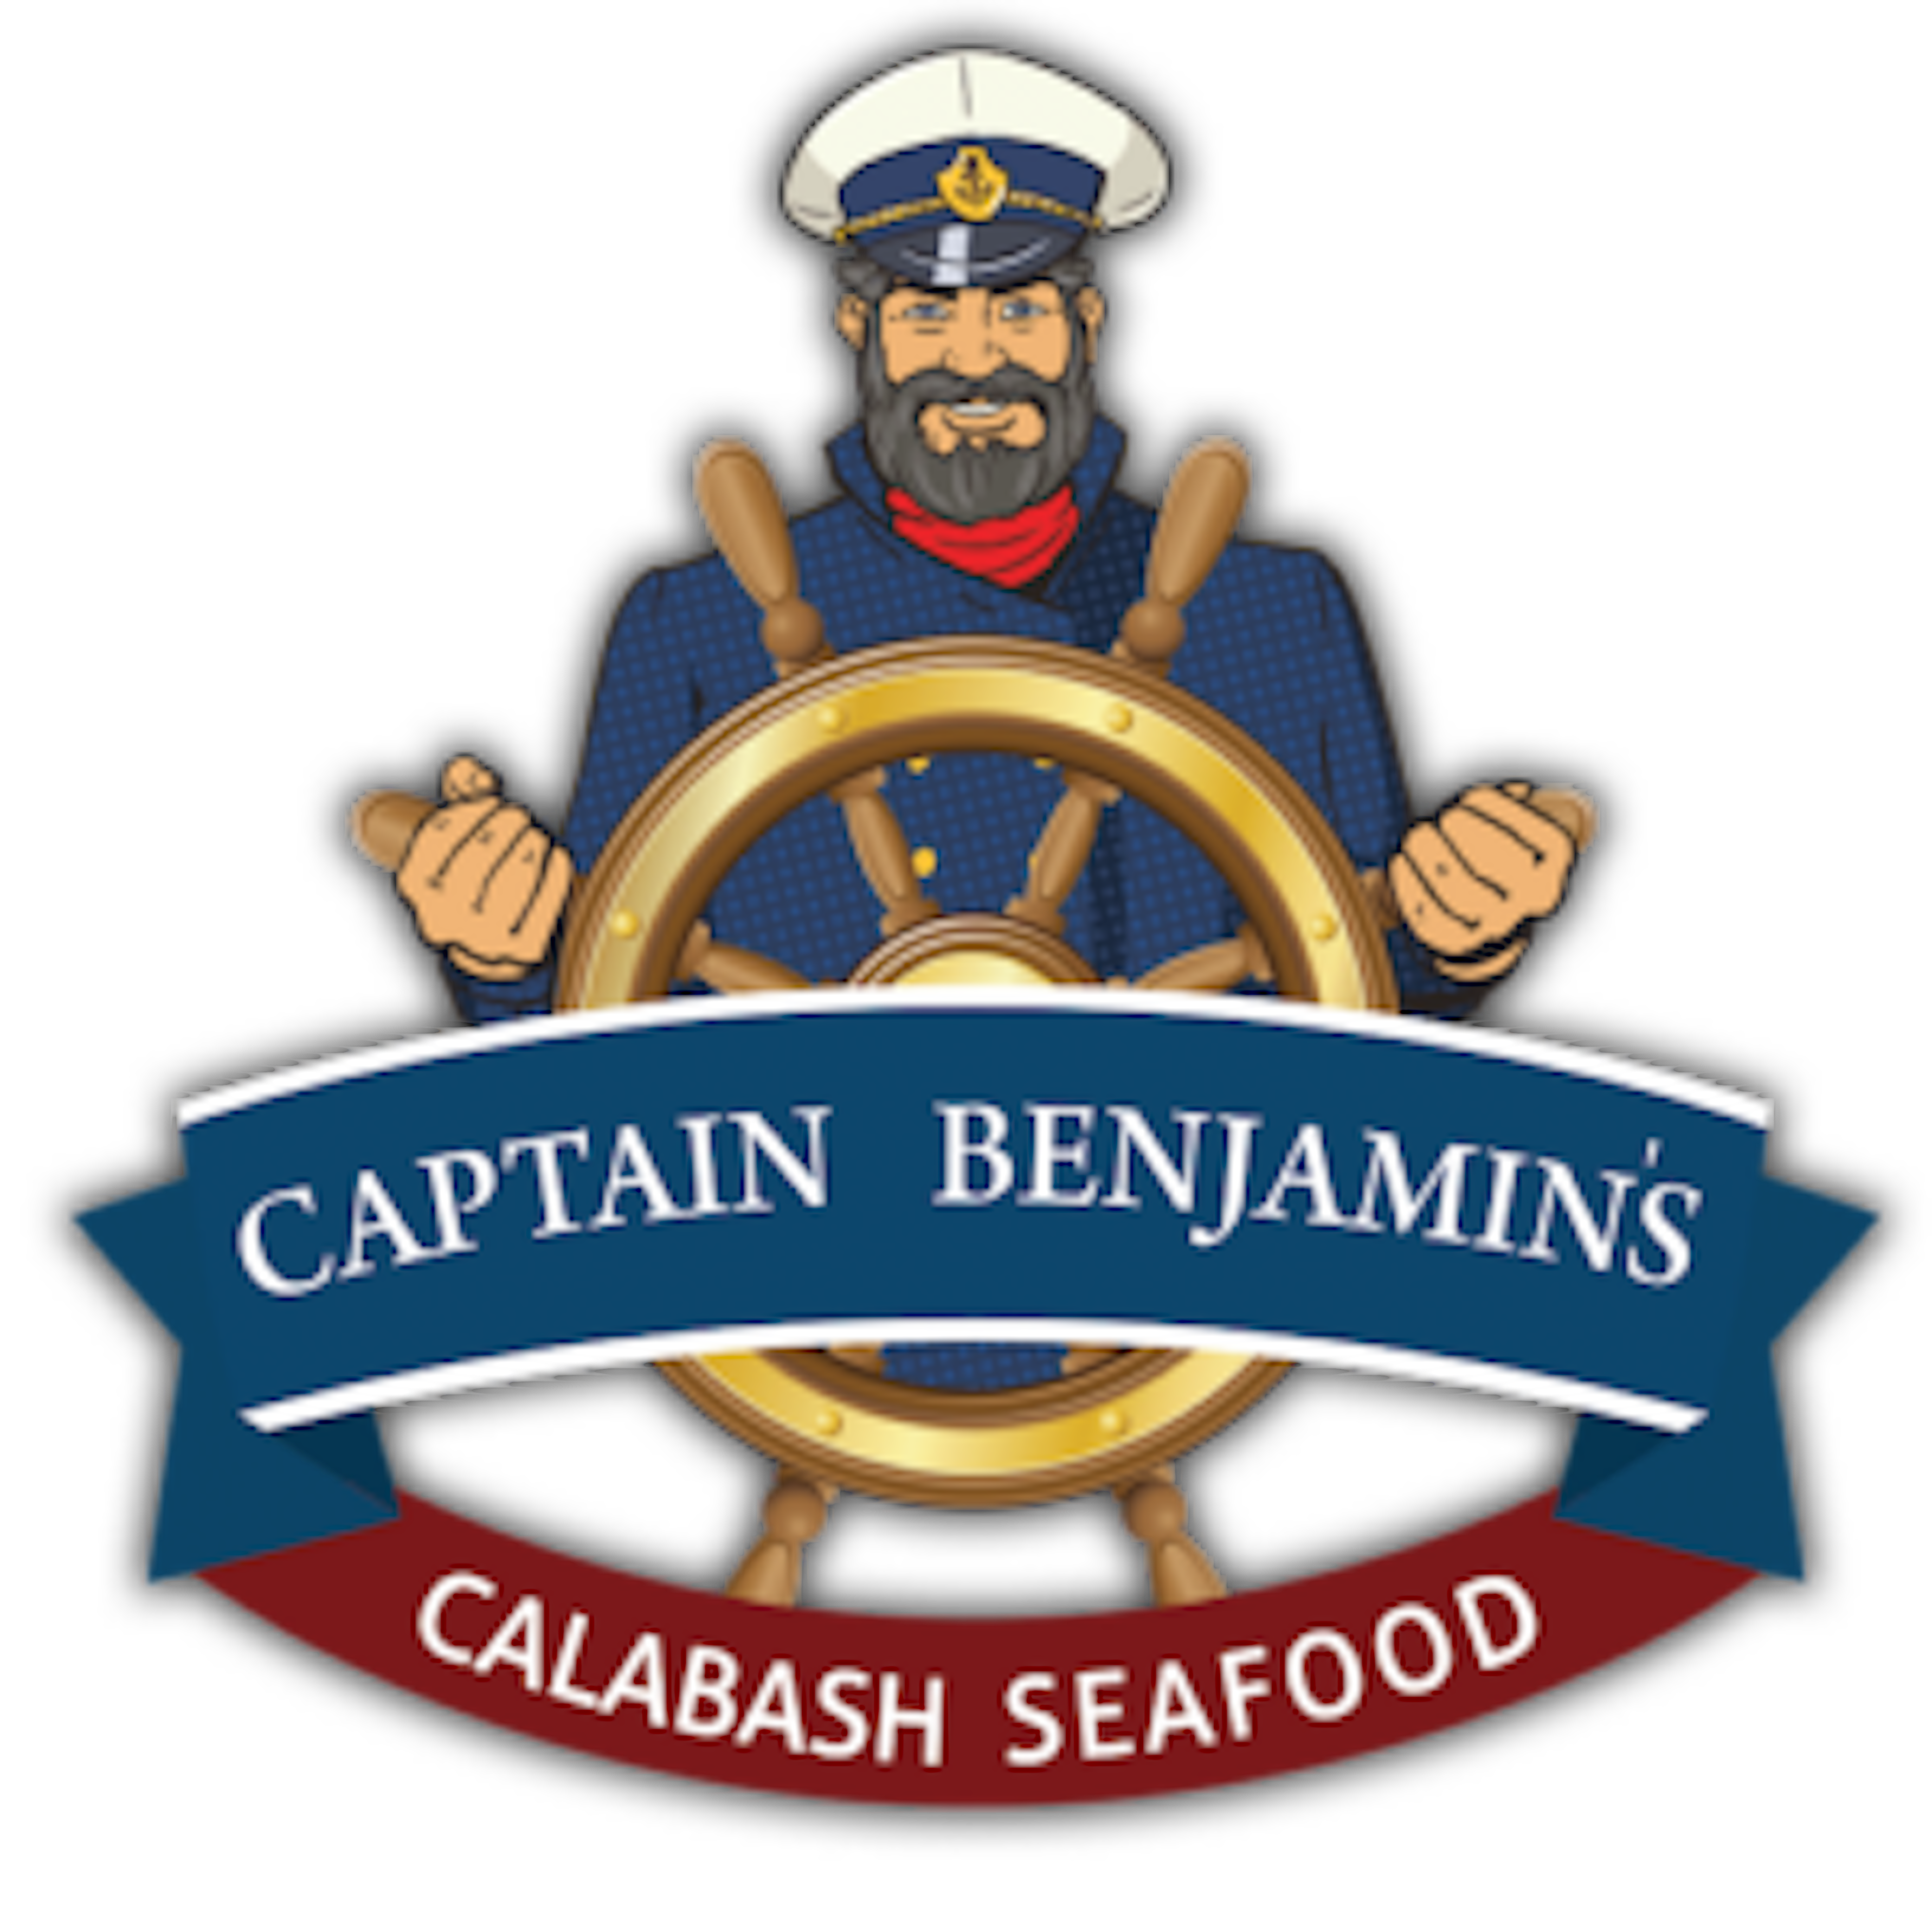 Captain Benjamin’s Calabash Seafood